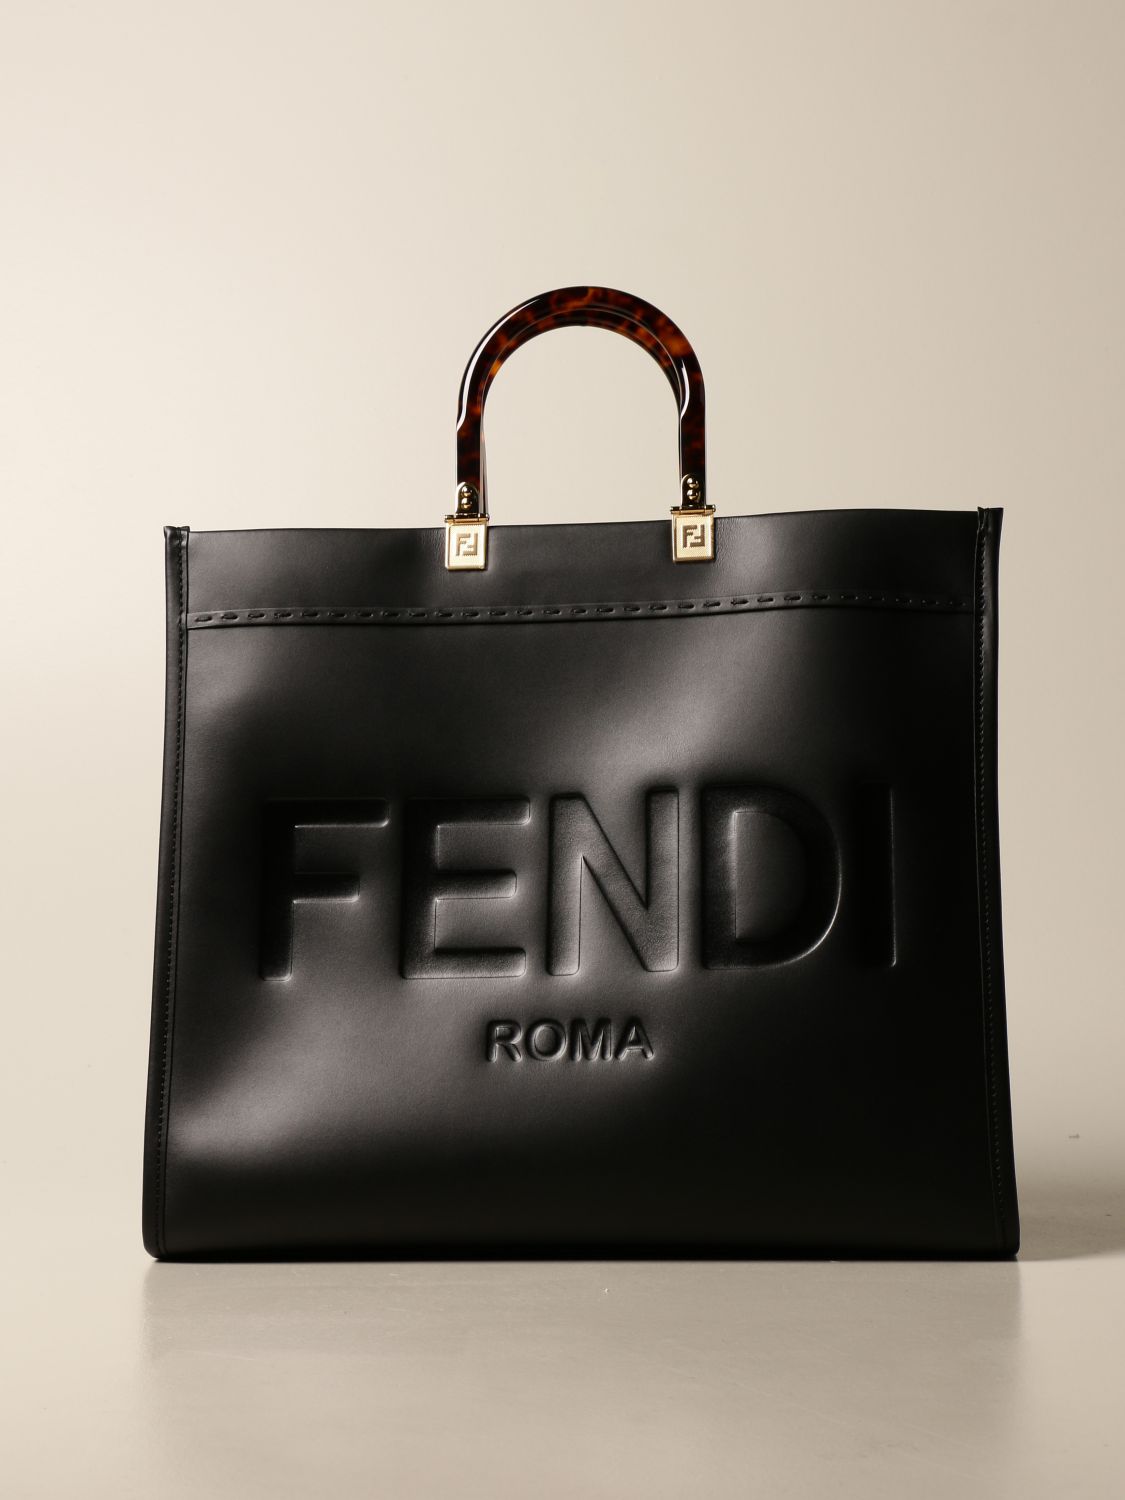 Mini Fendi Bag Cheap Clearance, Save 56% | jlcatj.gob.mx